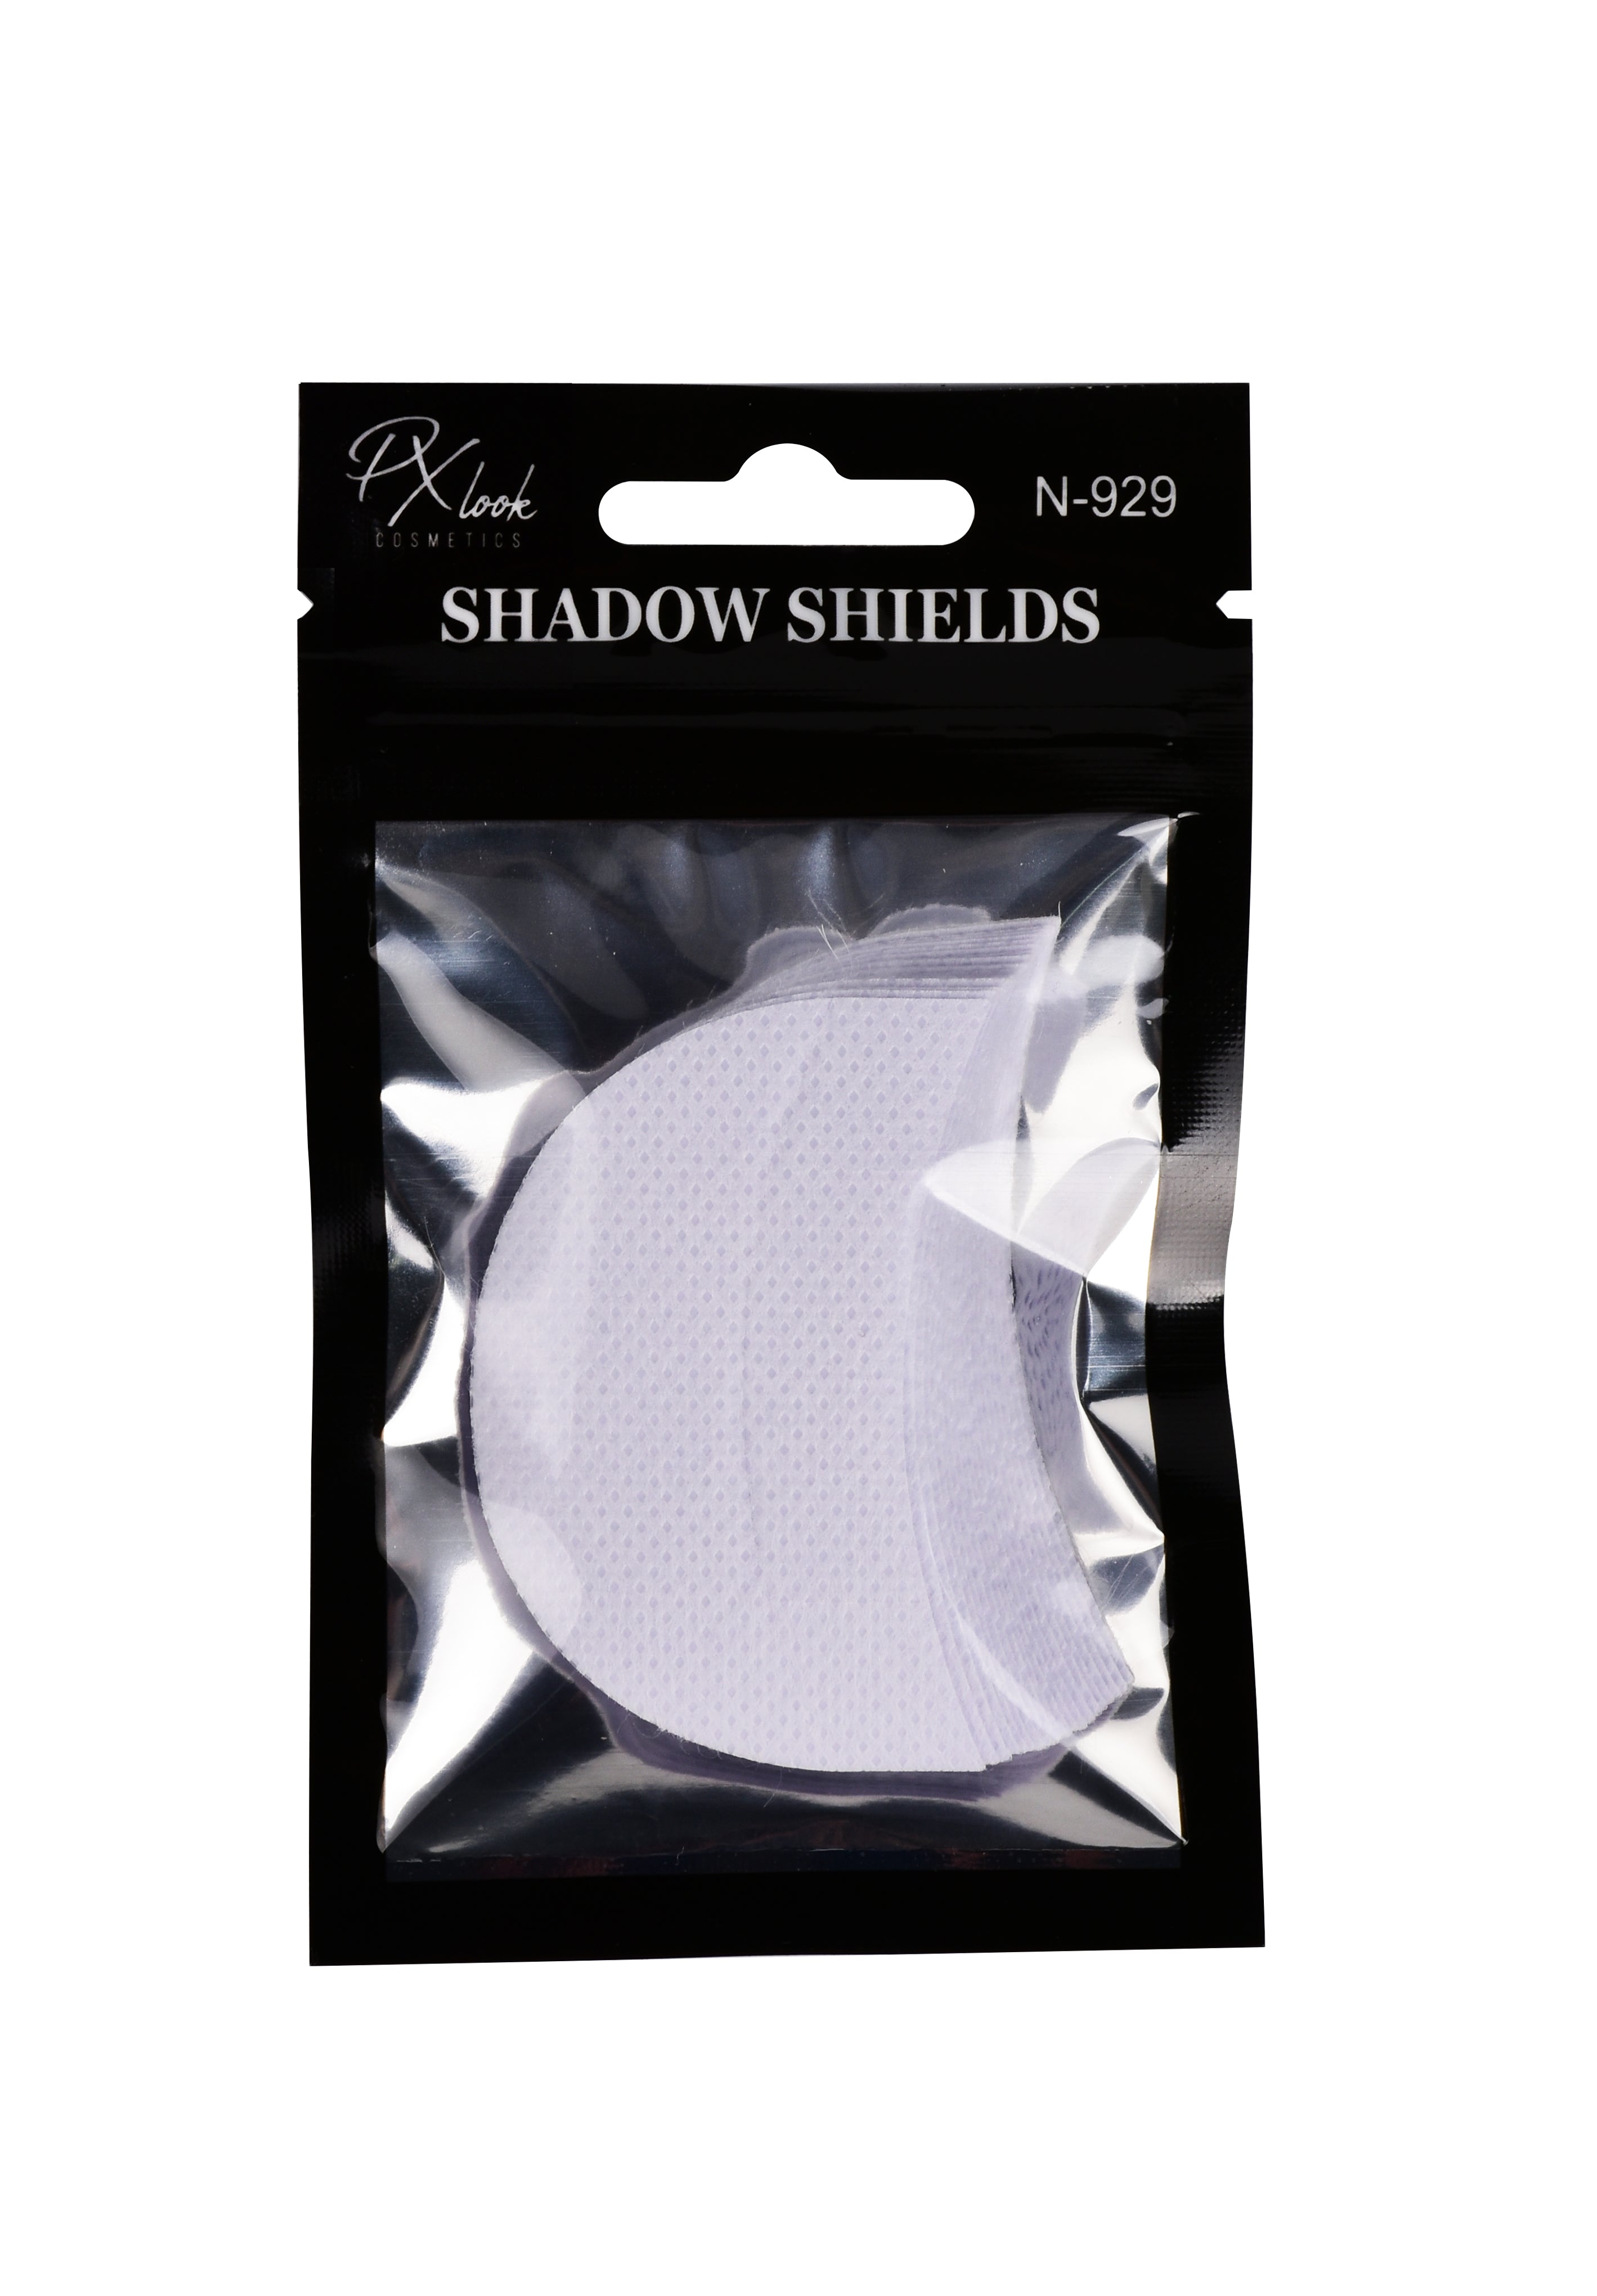 PxLook Shadow Shields